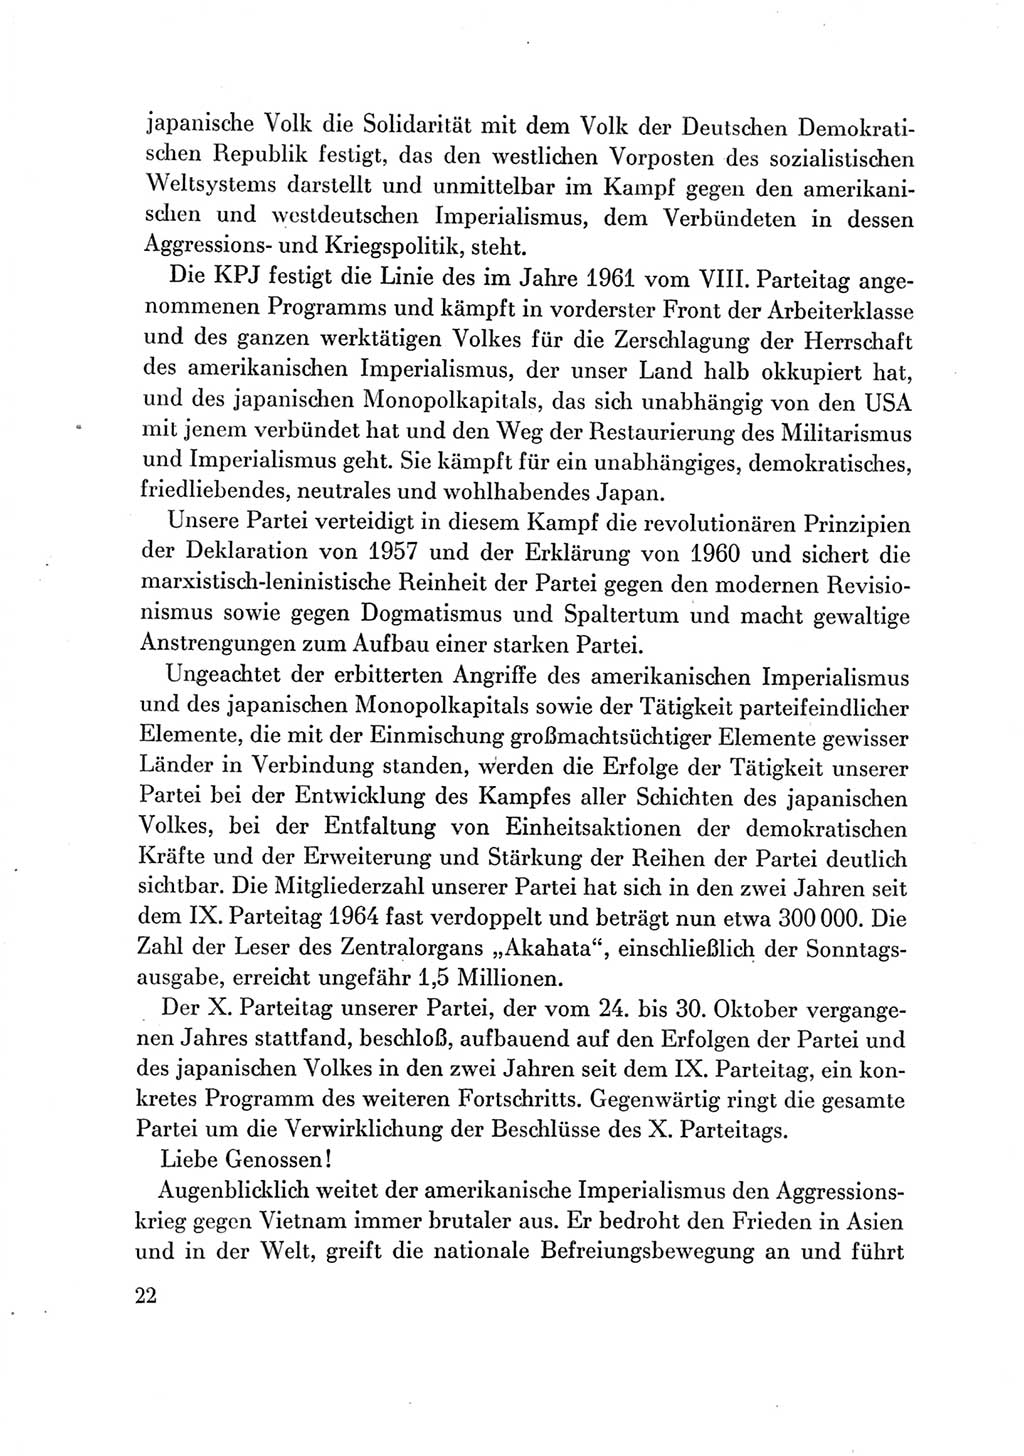 Protokoll der Verhandlungen des Ⅶ. Parteitages der Sozialistischen Einheitspartei Deutschlands (SED) [Deutsche Demokratische Republik (DDR)] 1967, Band Ⅲ, Seite 22 (Prot. Verh. Ⅶ. PT SED DDR 1967, Bd. Ⅲ, S. 22)